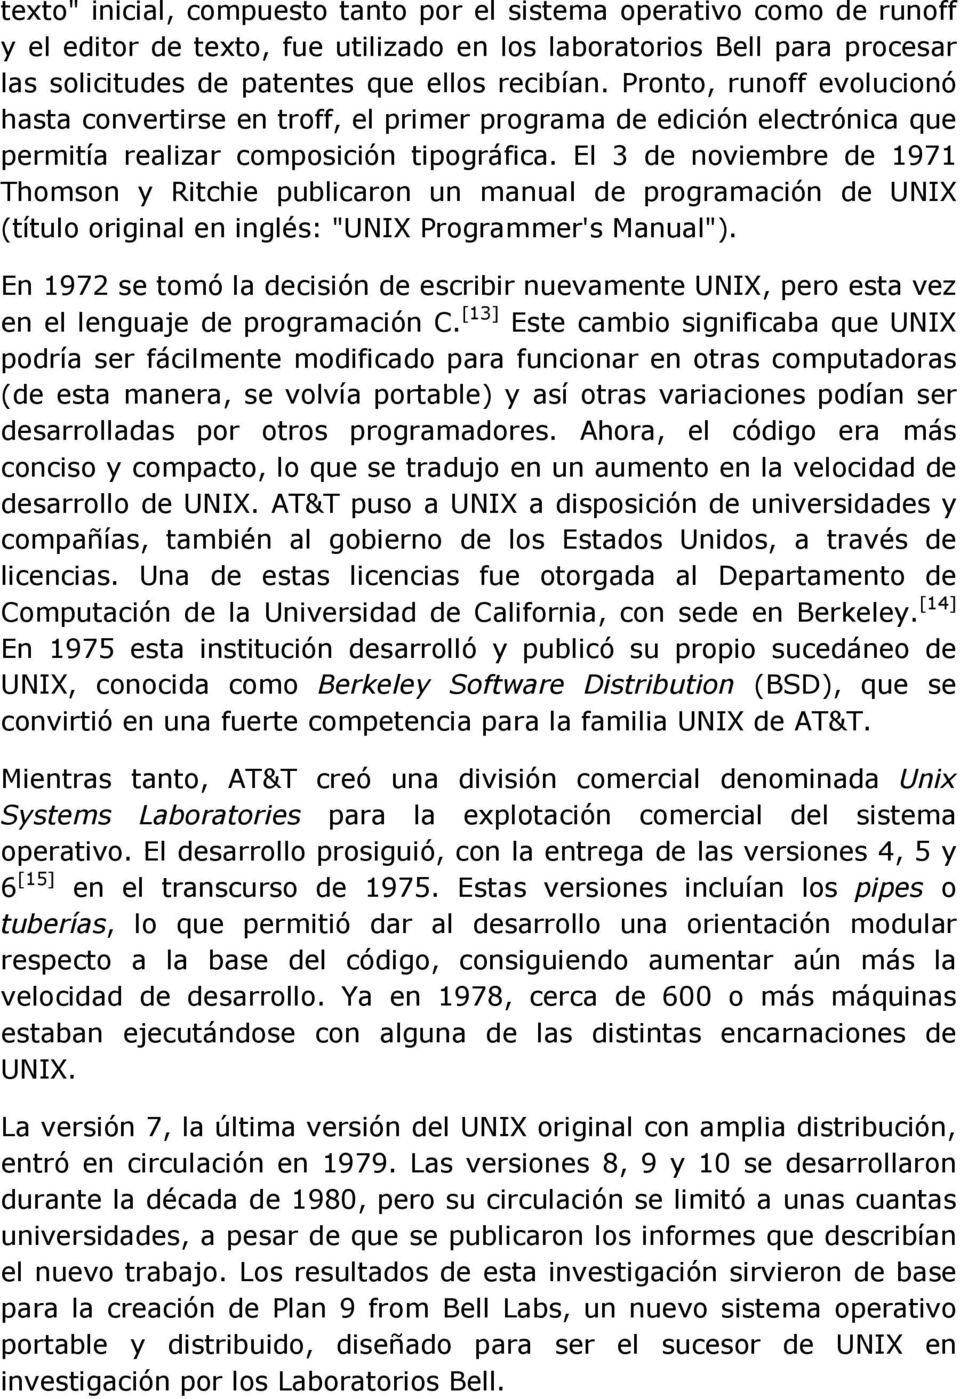 El 3 de noviembre de 1971 Thomson y Ritchie publicaron un manual de programación de UNIX (título original en inglés: "UNIX Programmer's Manual").